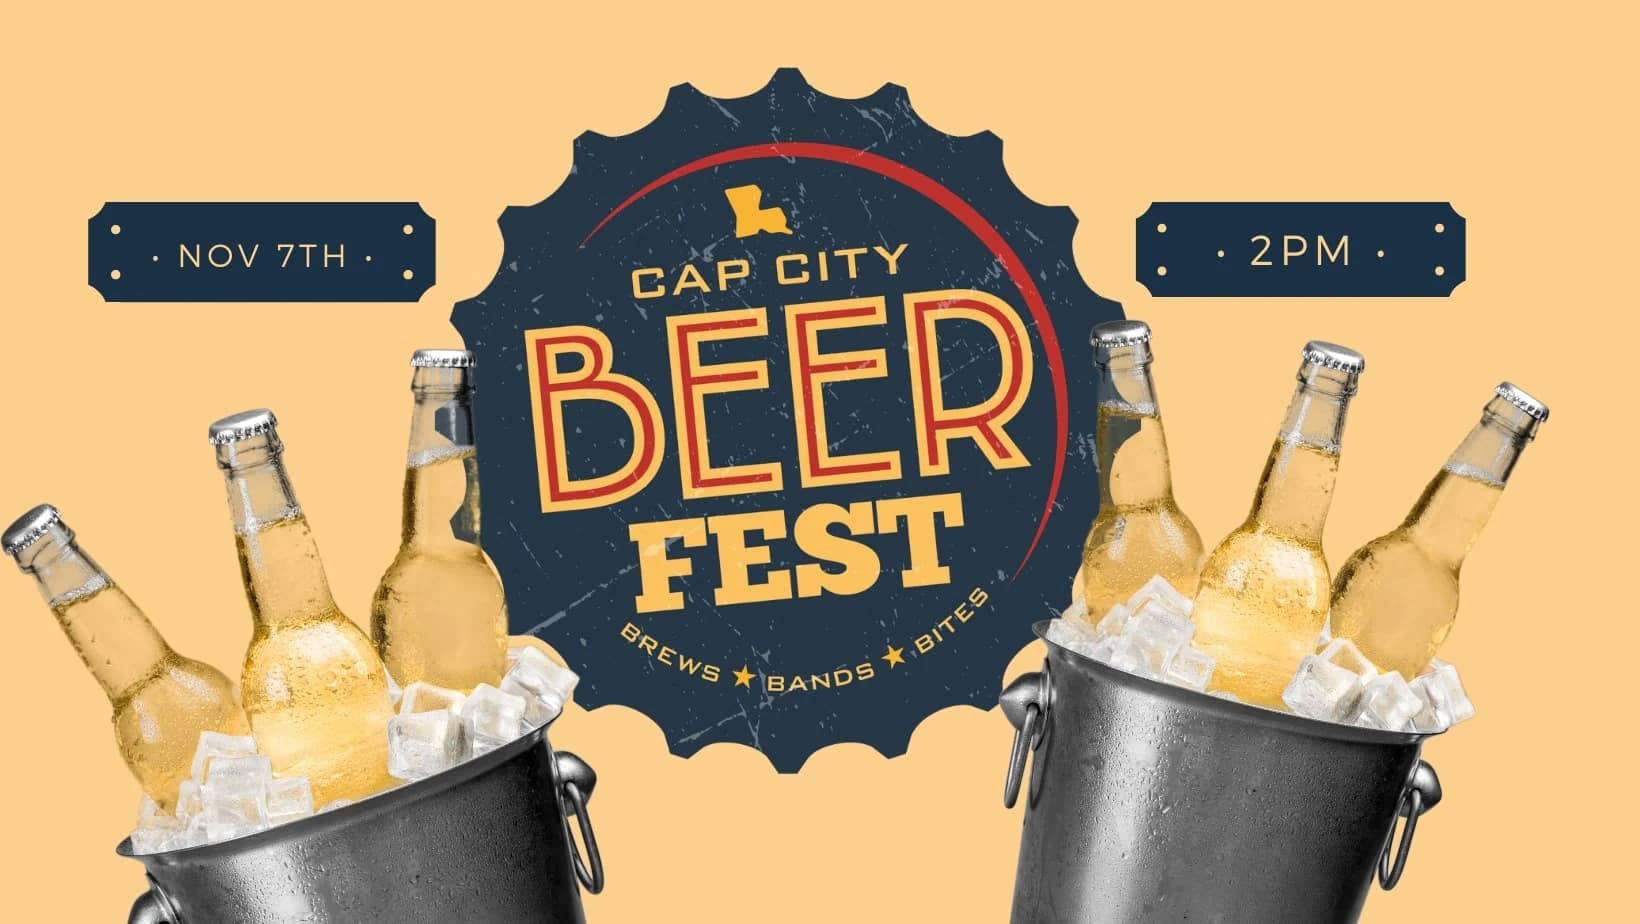 Cap City Beer Fest